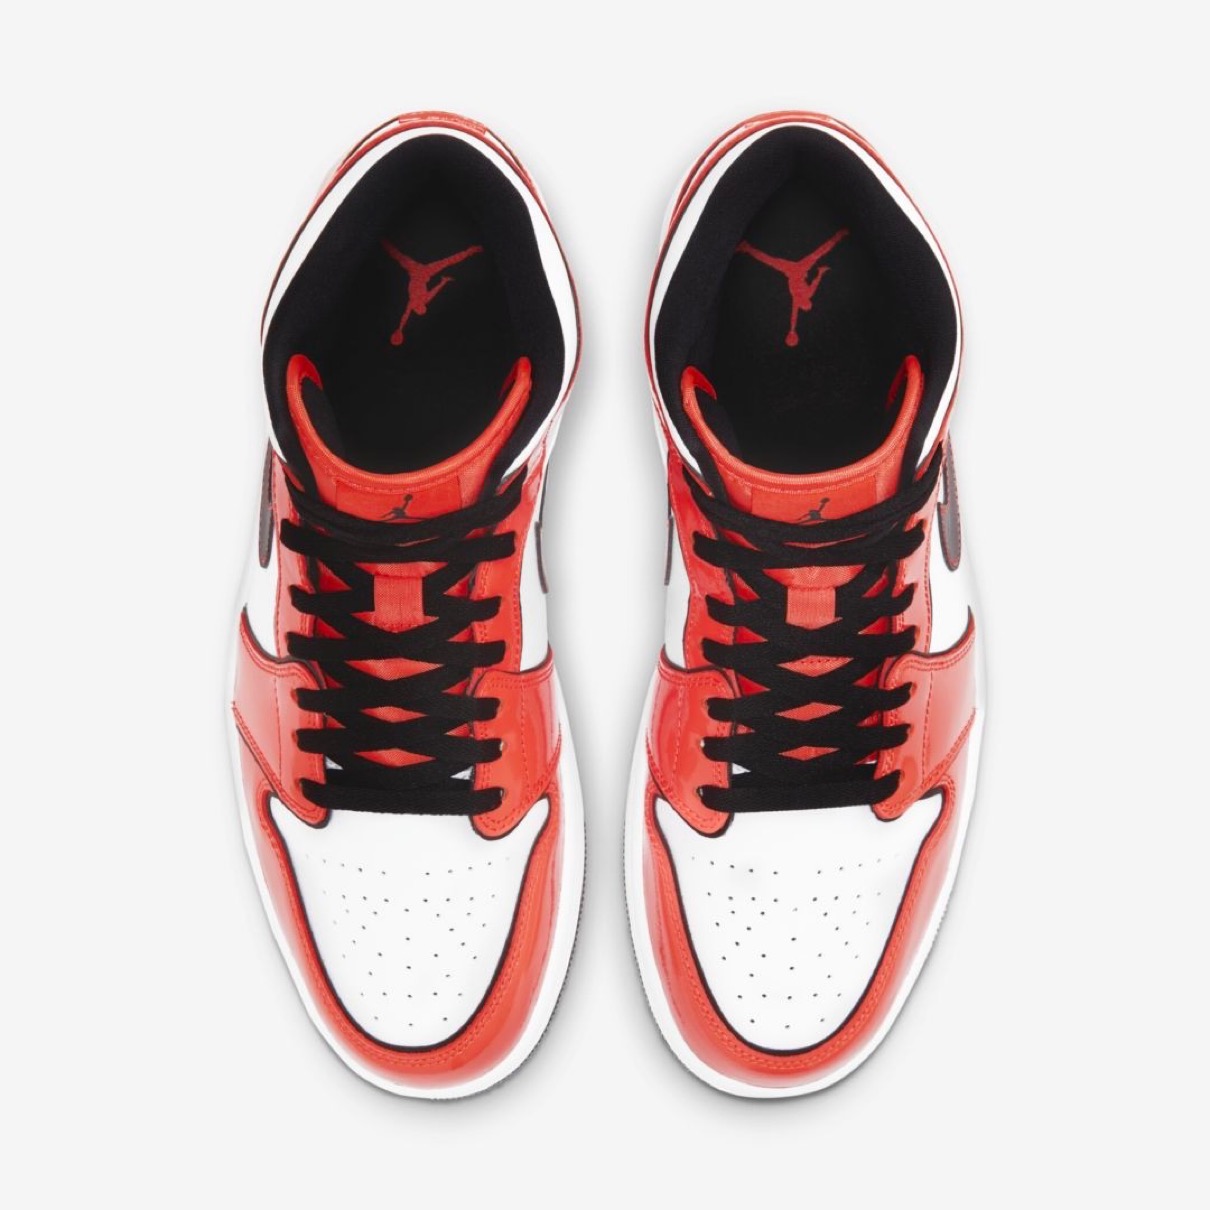 Nike】Air Jordan 1 Mid SE “Turf Orange”が発売予定 | UP TO DATE